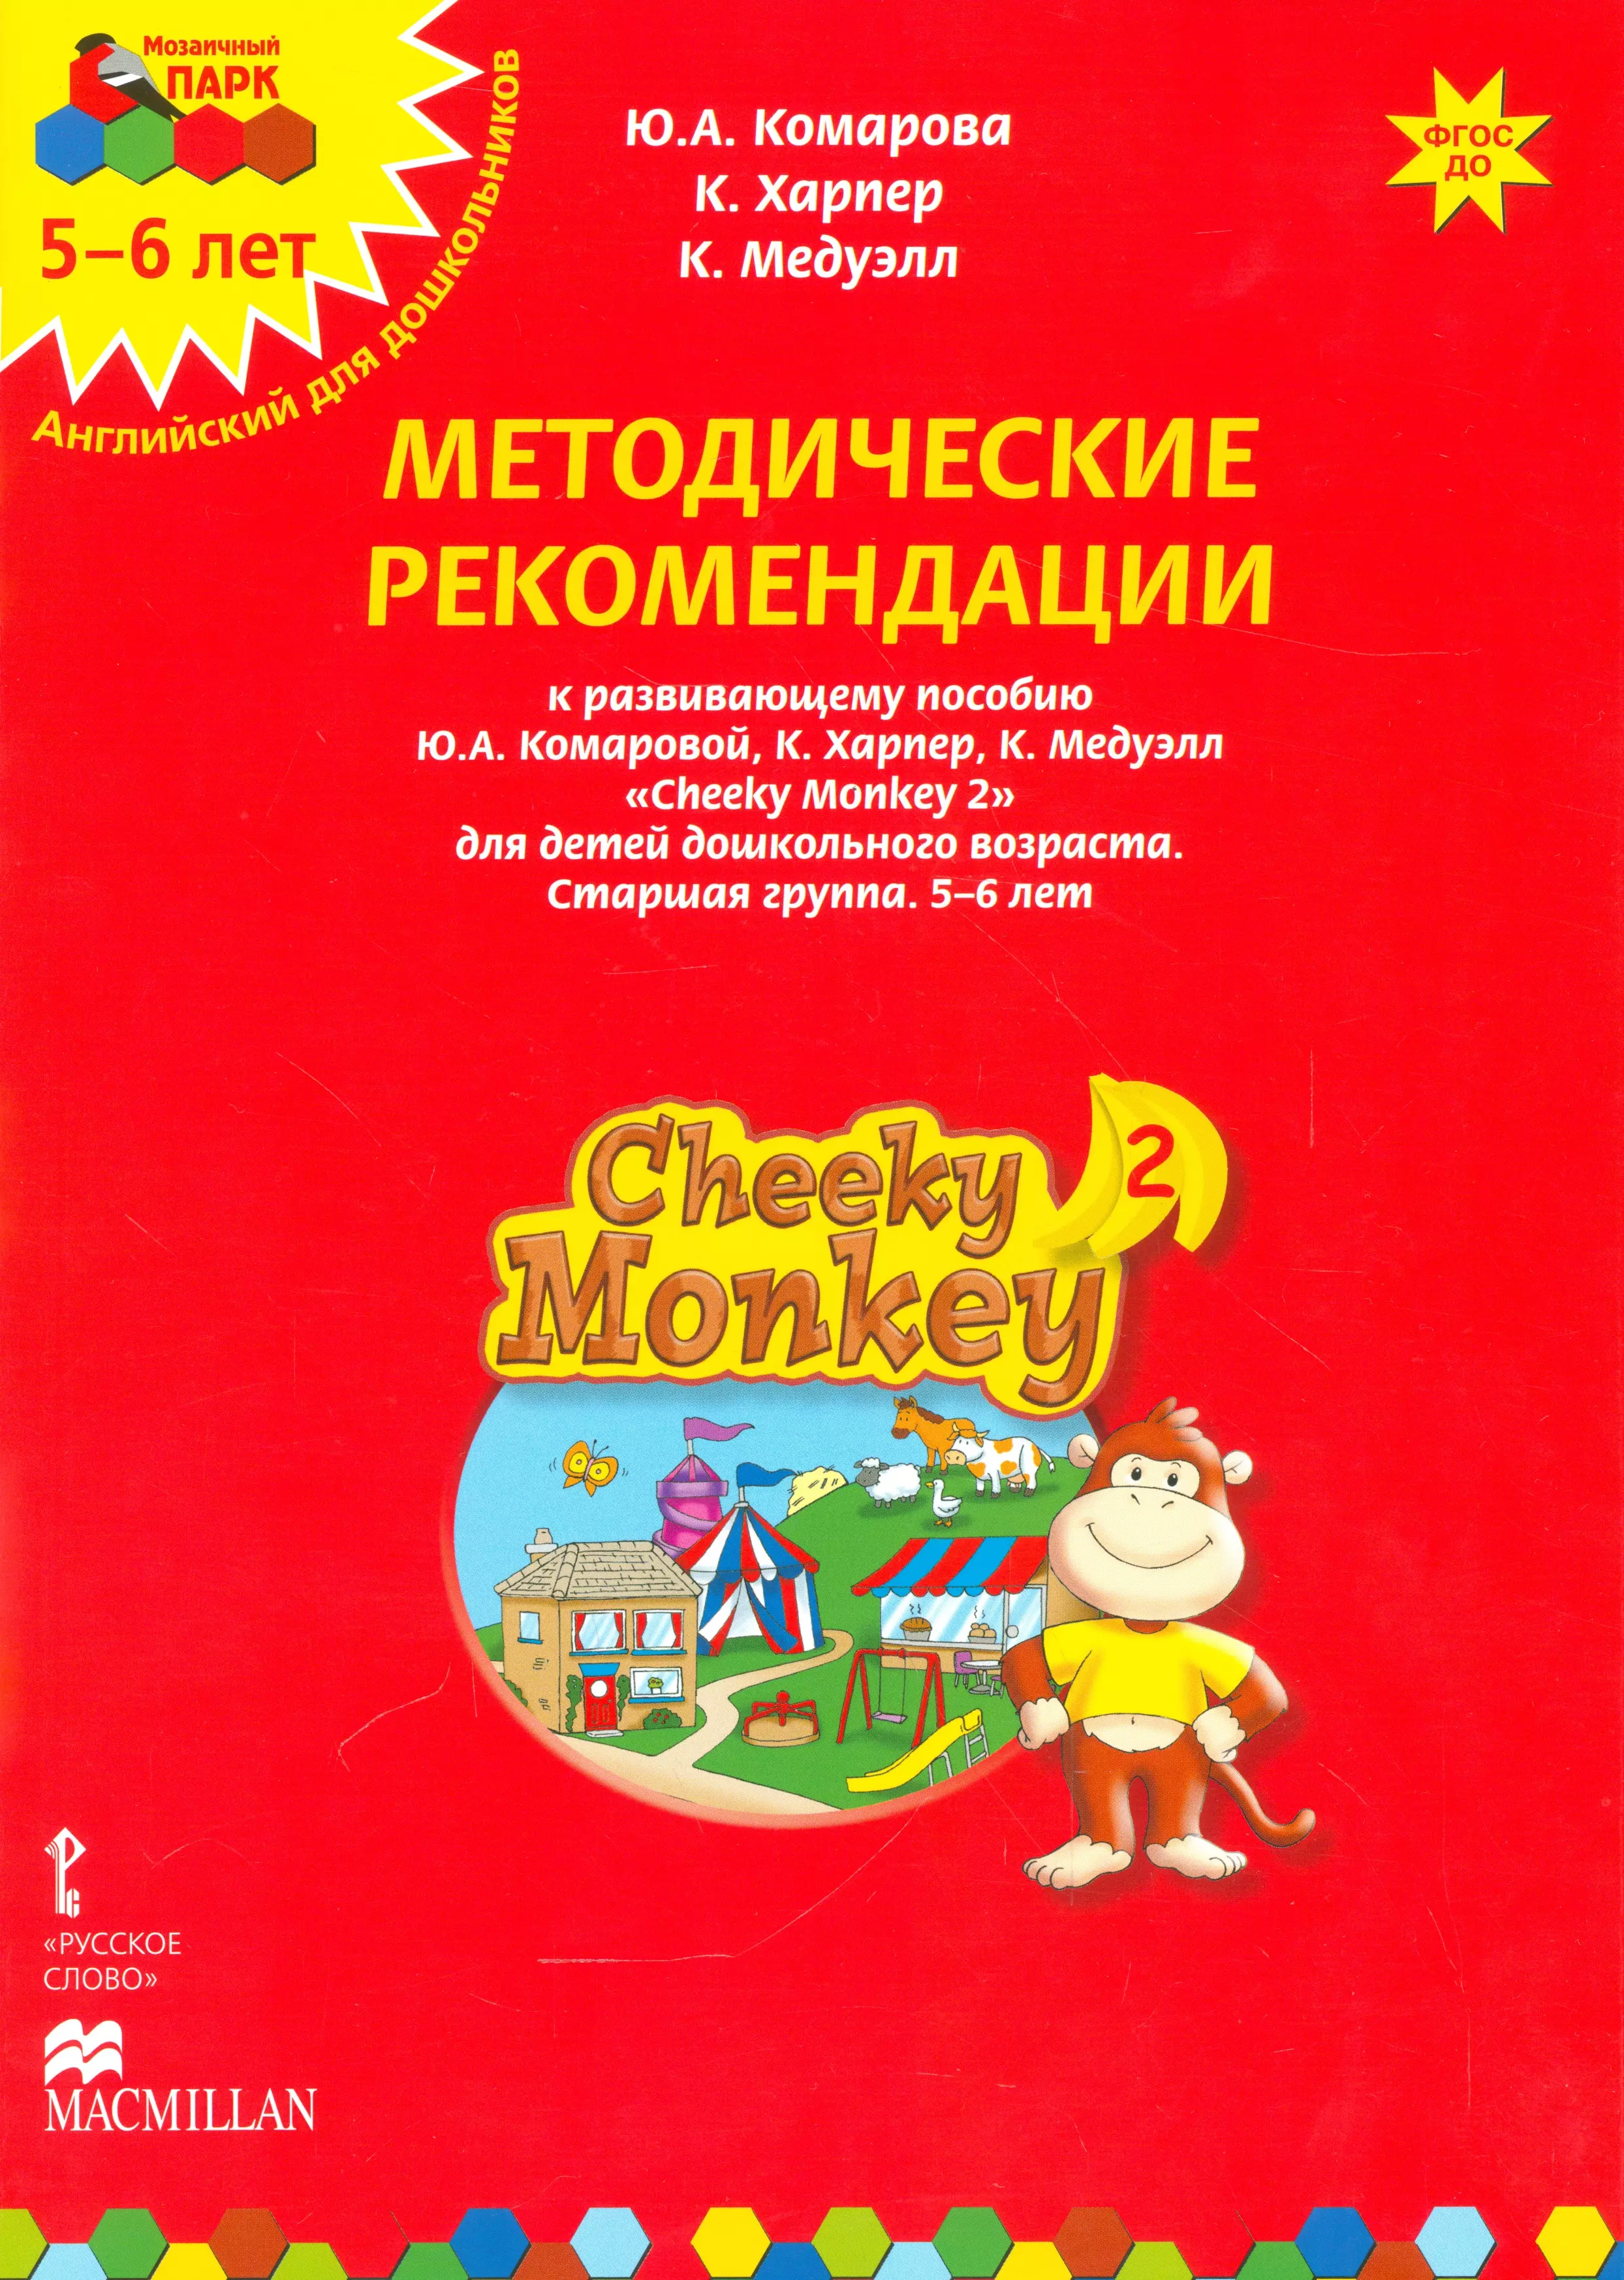  - Методические рекомендации к развивающему пособию Ю.А. Комаровой, К. Харпер, К. Медуэлл "Cheeky Monkey 2. Для детей дошкольного возраста. Старшая группа. 5-6 лет"